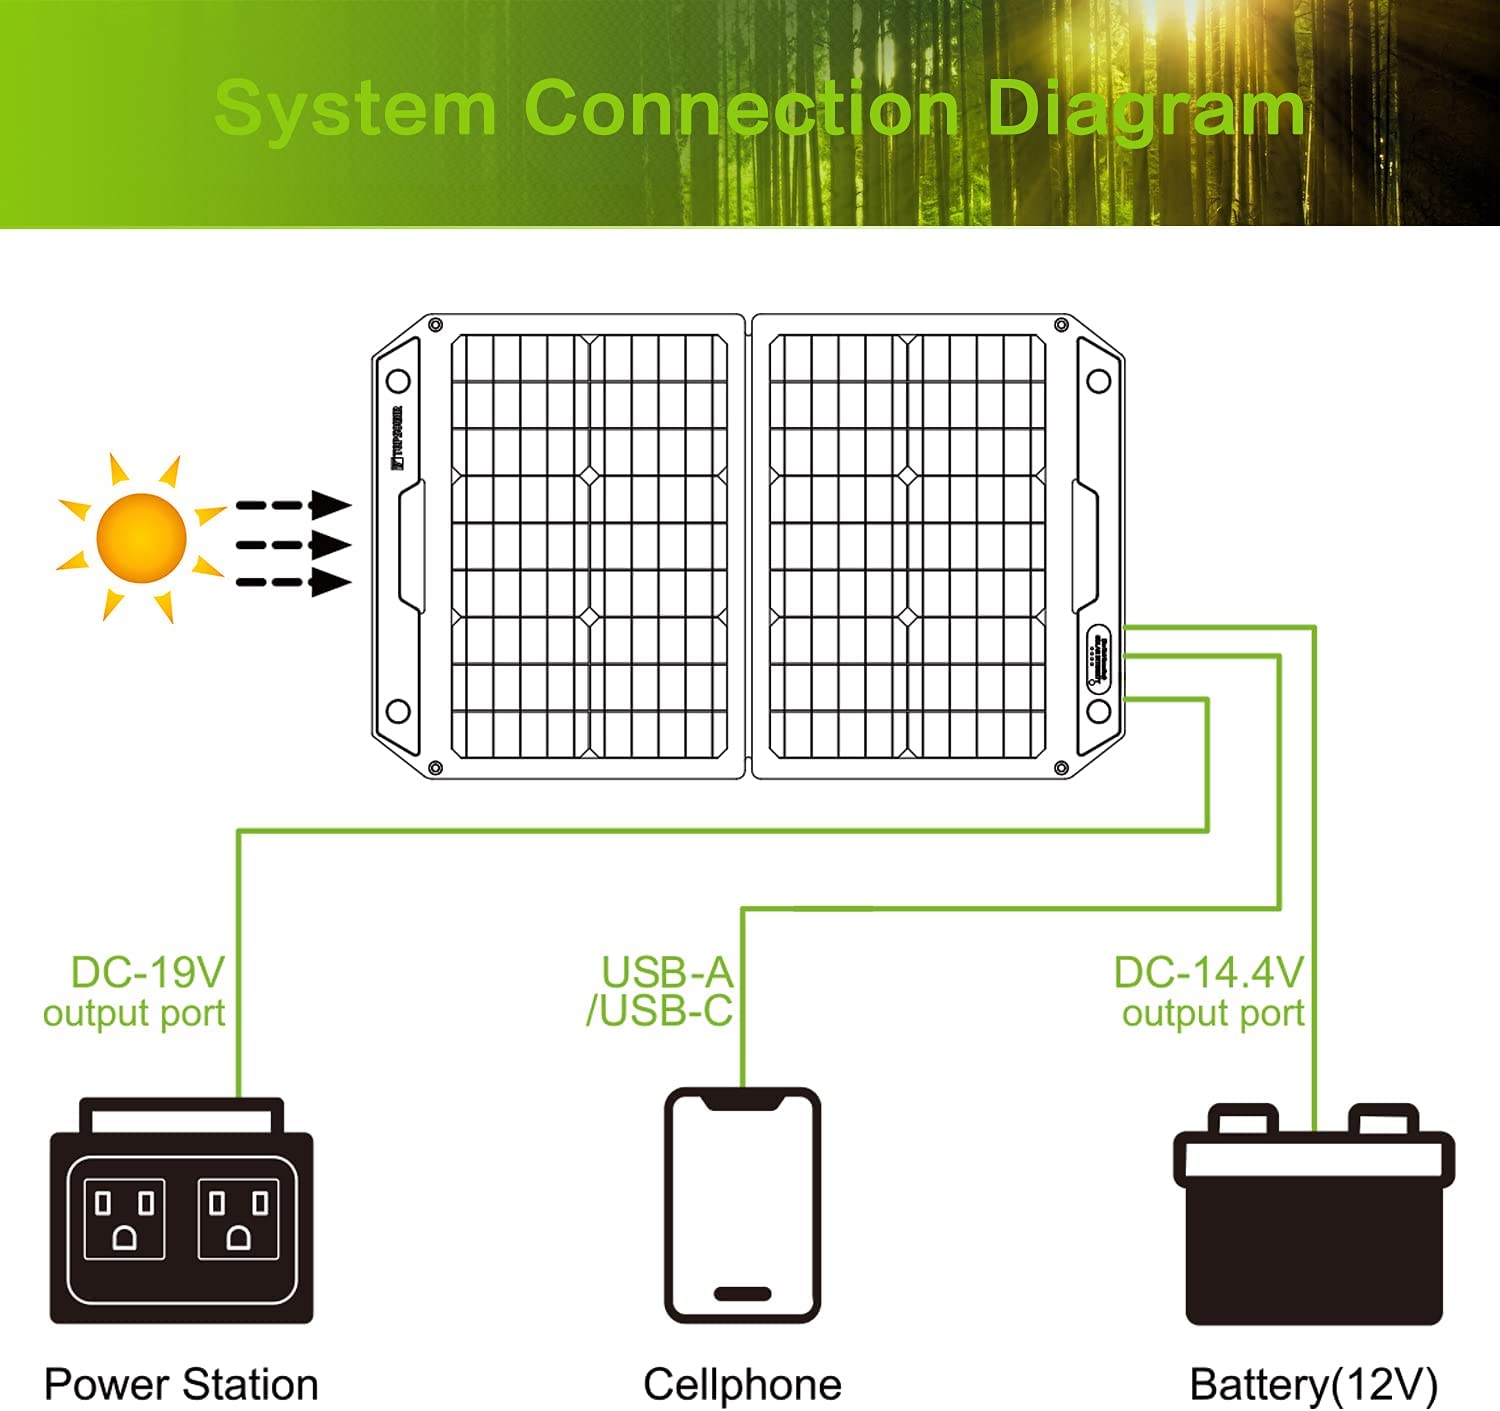 پنل خورشیدی قابل حمل مدل Topsolar 100W Foldable Portable Solar - ارسال 10 الی 15 روز کاری